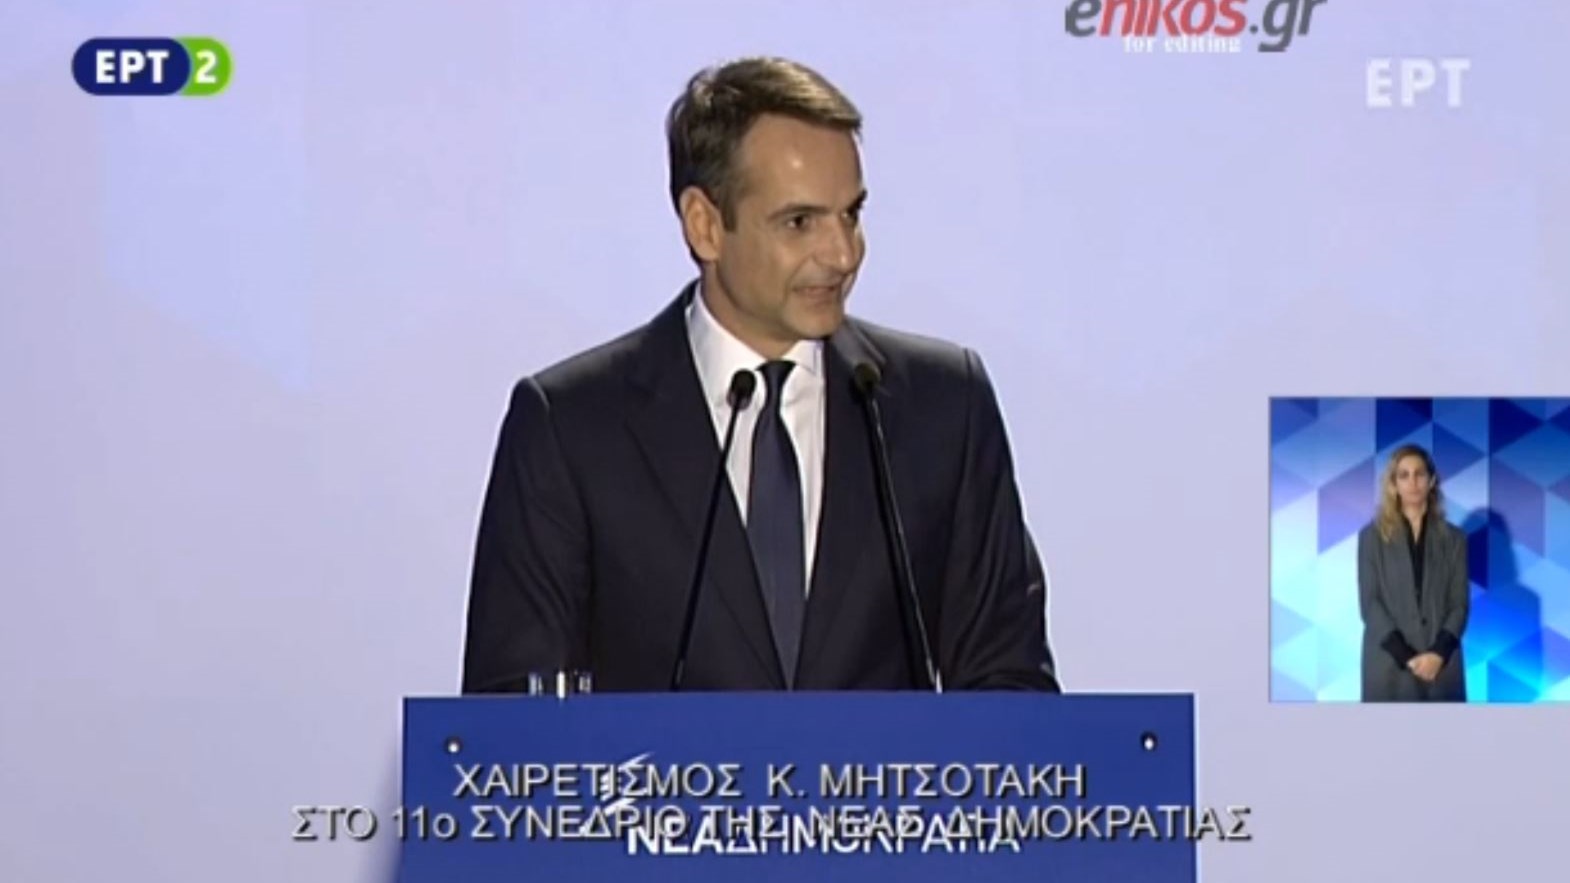 Μητσοτάκης: Είμαστε έτοιμοι να αλλάξουμε την Ελλάδα – ΒΙΝΤΕΟ